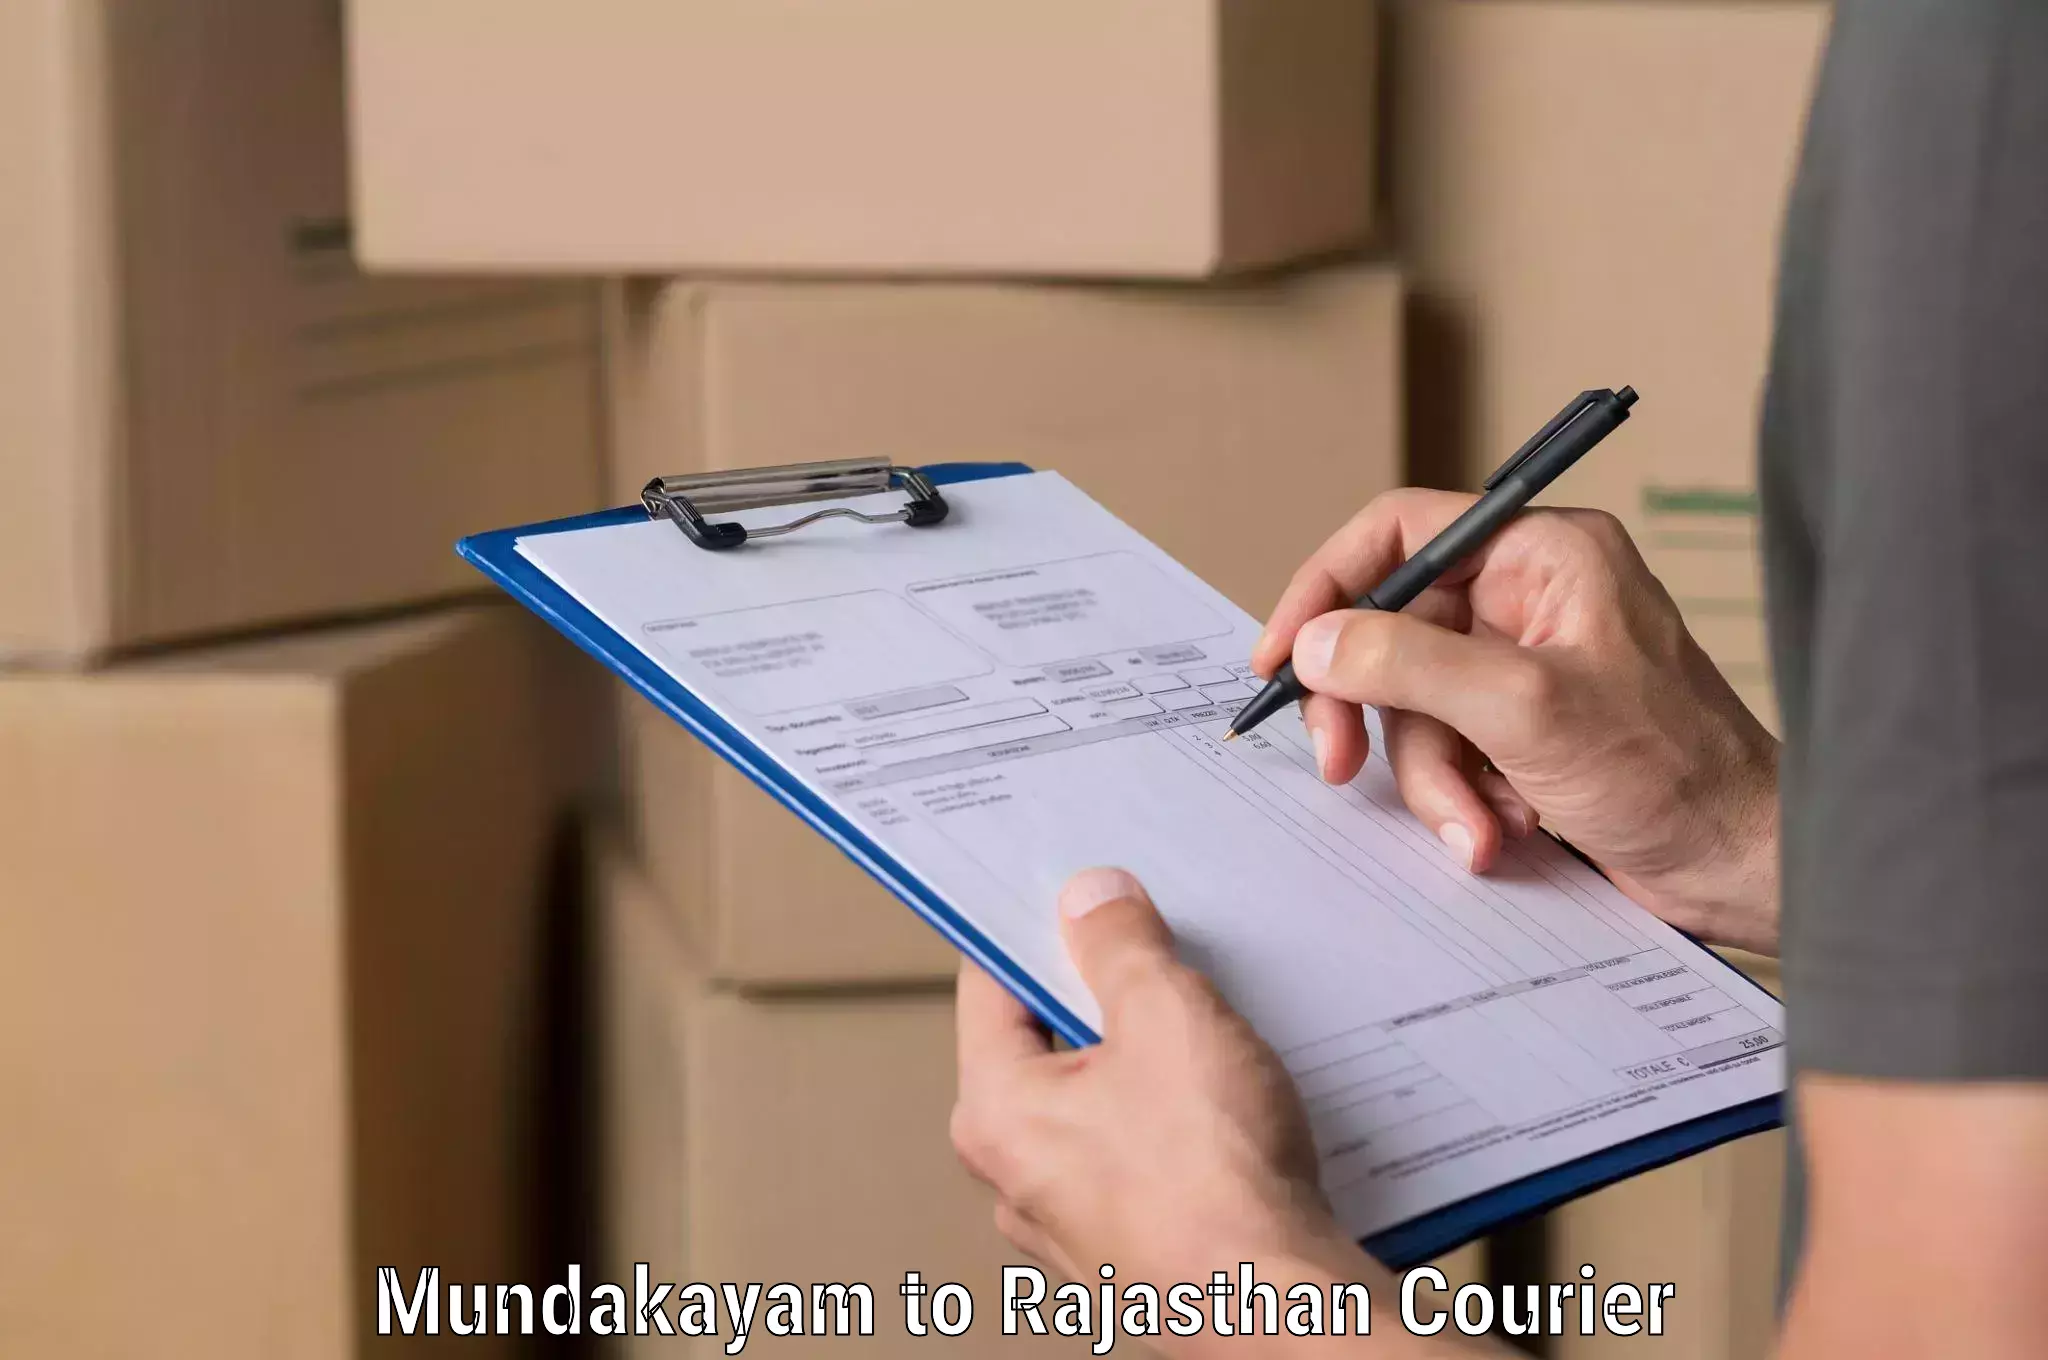 Professional courier handling in Mundakayam to Udaipurwati